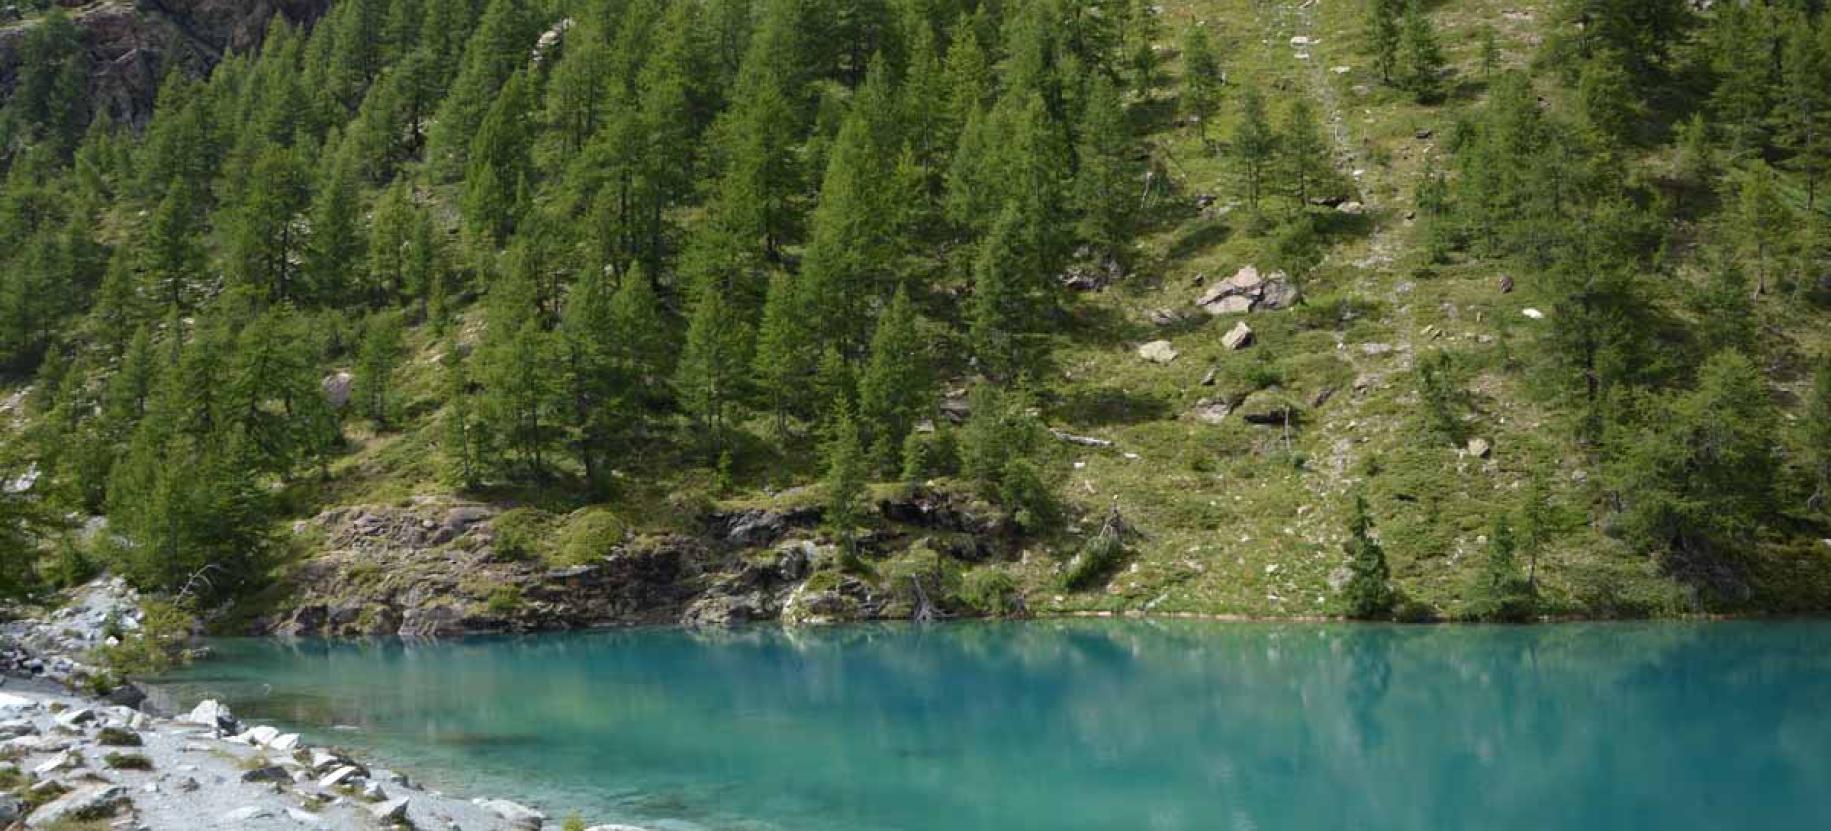 Lago blu, un gioiello turchese tra i ghiacci